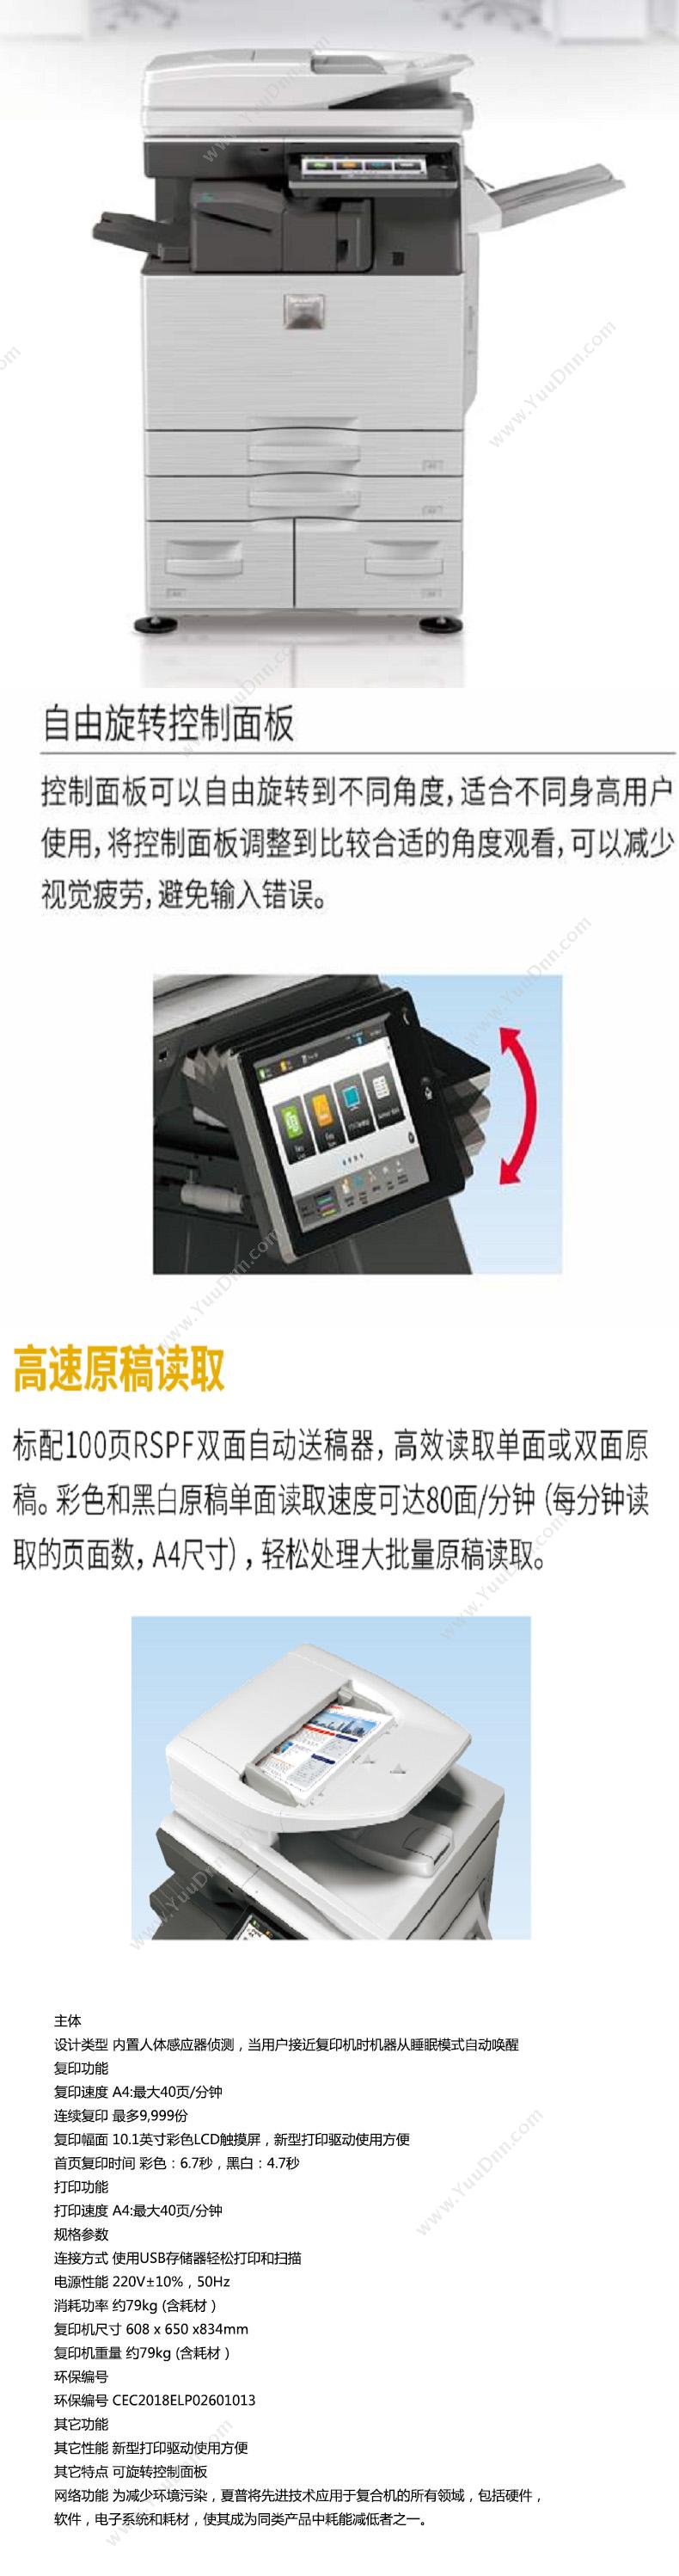 夏普 Sharp MX-C4081RV 复印机 A4彩色激光打印机